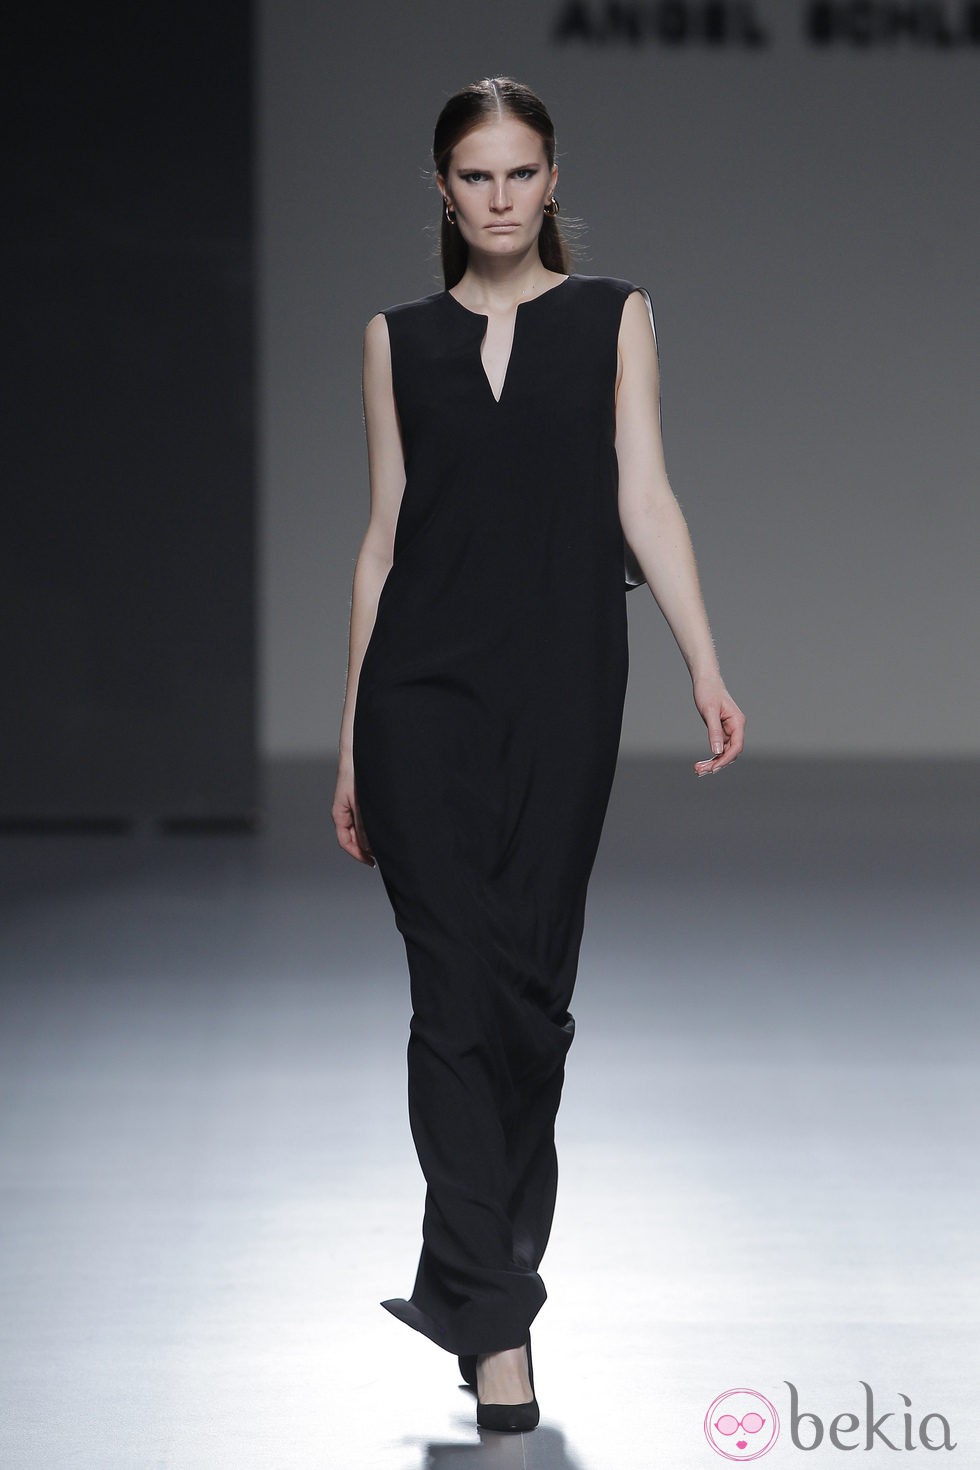 Vestido negro largo de la colección otoño/invierno 2013/2014 de Ángel Schlesser en Madrid Fashion Week